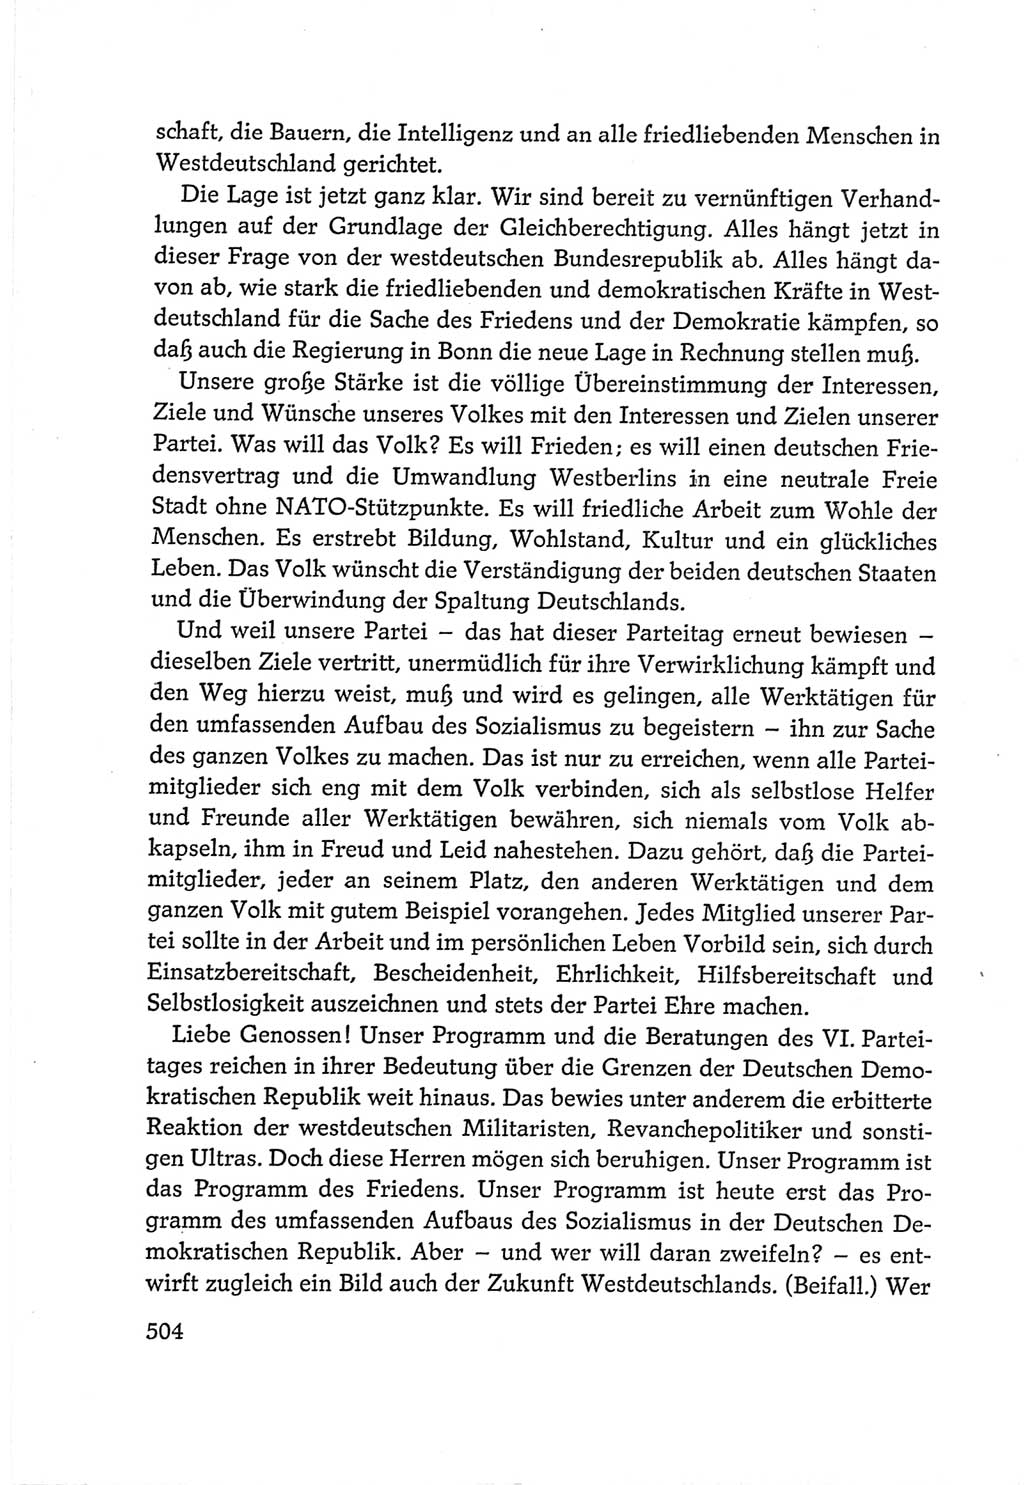 Protokoll der Verhandlungen des Ⅵ. Parteitages der Sozialistischen Einheitspartei Deutschlands (SED) [Deutsche Demokratische Republik (DDR)] 1963, Band Ⅱ, Seite 504 (Prot. Verh. Ⅵ. PT SED DDR 1963, Bd. Ⅱ, S. 504)